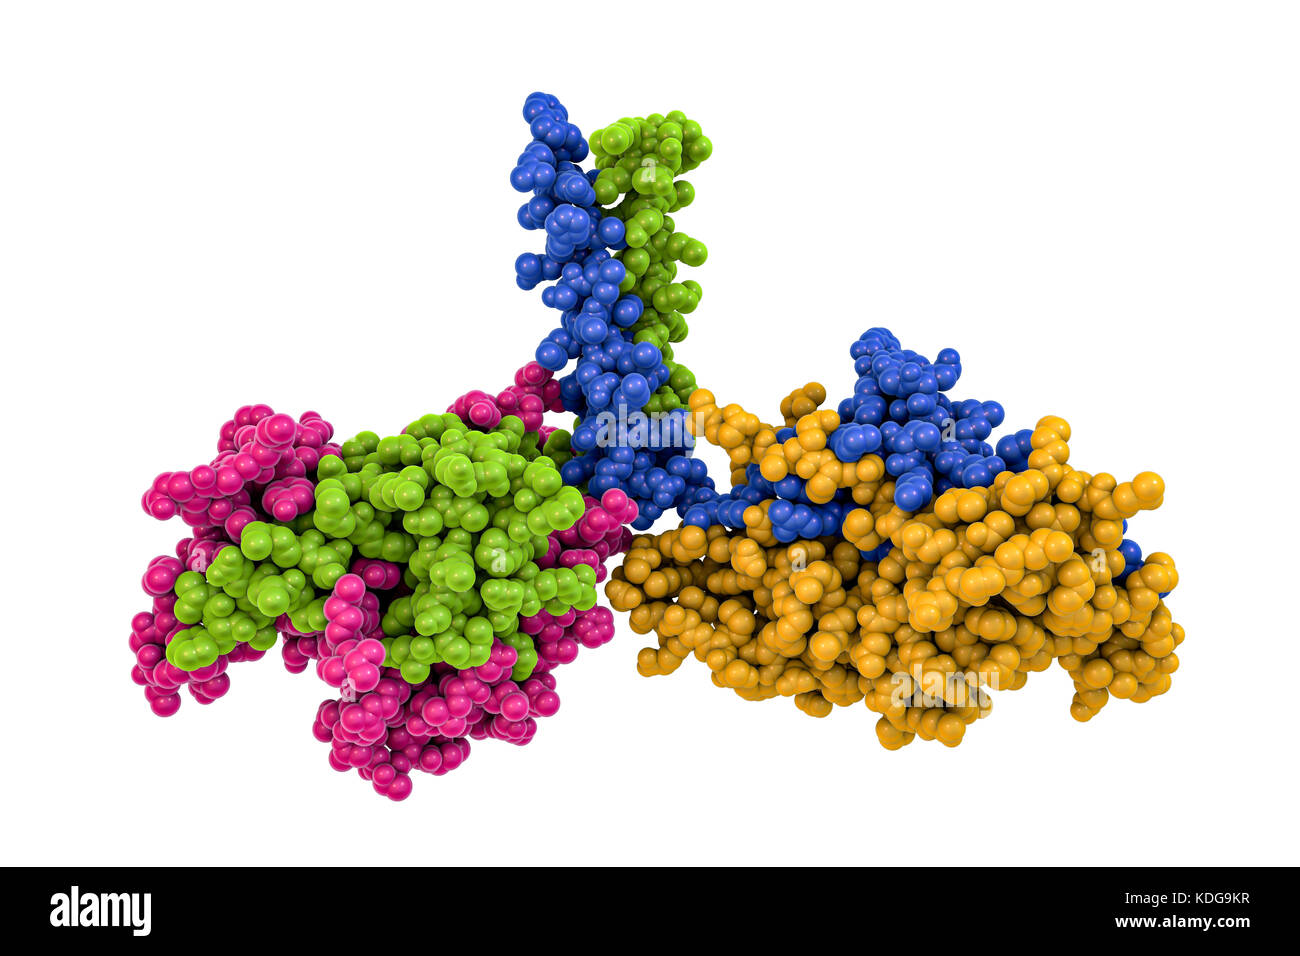 Motore di chinesina dimero di proteina, modello molecolare. Chinesina è una proteina del motore che si muove lungo i filamenti dei microtubuli nelle cellule. Lo fa in modo tale da formare un dimero, le cui teste 'cammina' lungo il microtubulo. Qui i capi del dimero sono formati da due catene proteiche (verde e rosa, sinistra; e giallo e blu, destra) che sono attaccati da un "collo" regione (centro superiore) dove essi bobina insieme. Questo non è l'allineamento adottato quando si muove lungo un microtubulo. La struttura modellata qui è basata su studi di questo chinesina nel ratto marrone (Rattus norvegicus). Foto Stock